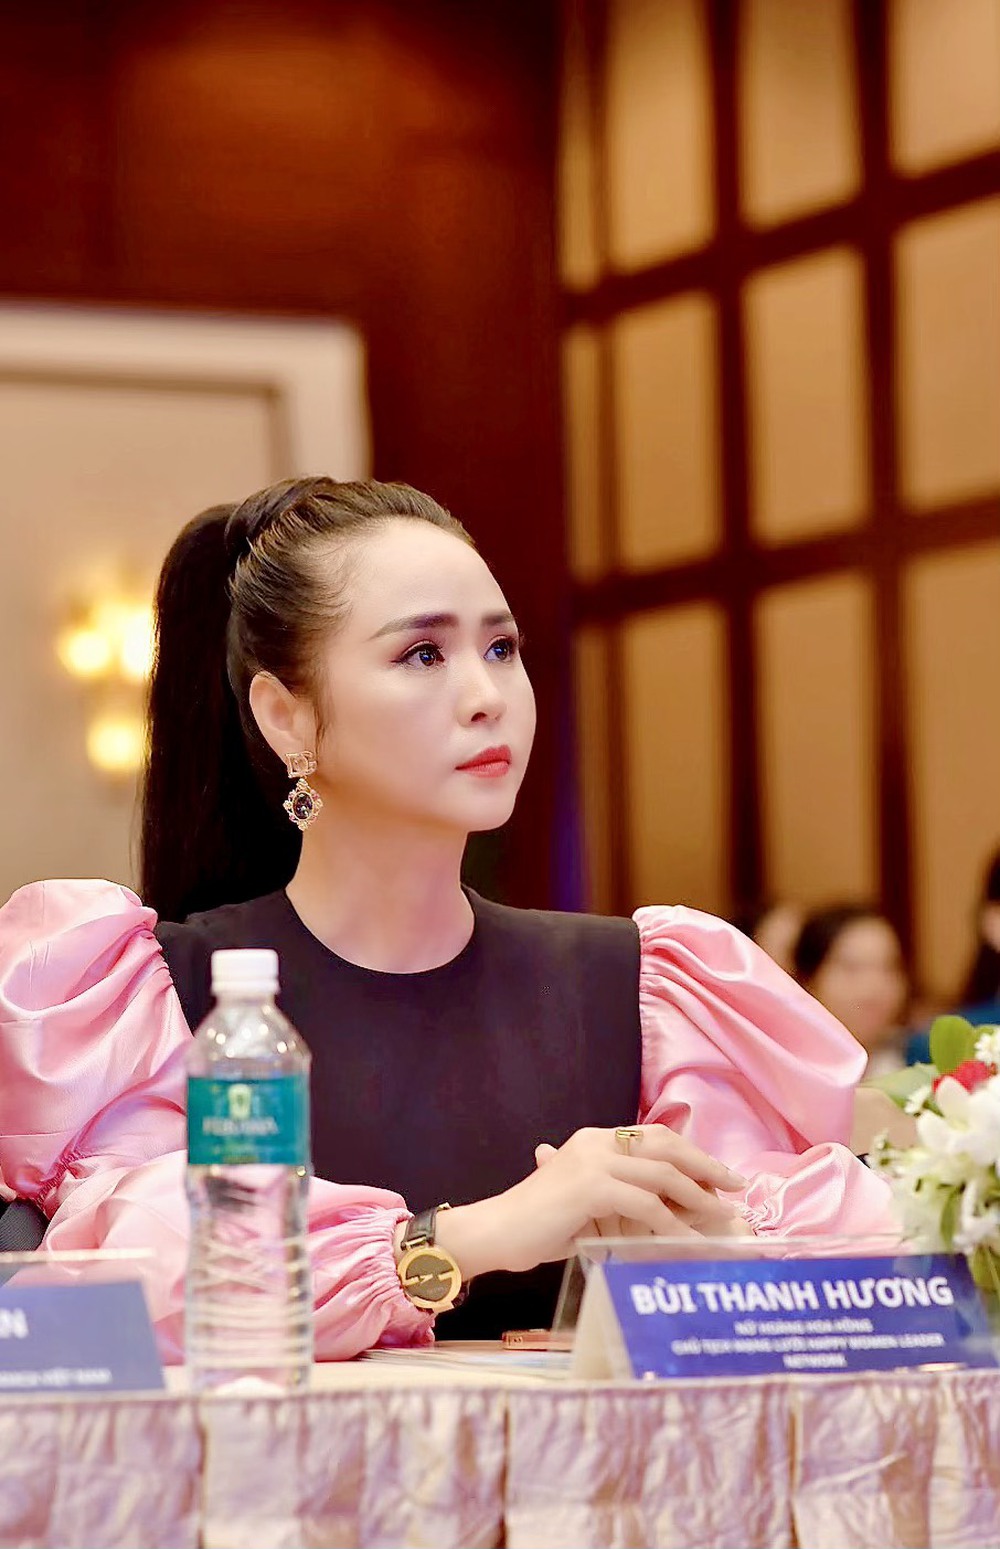 Nữ hoàng Hoa hồng Bùi Thanh Hương quảng bá nét đẹp áo dài và di sản Việt - Ảnh 2.